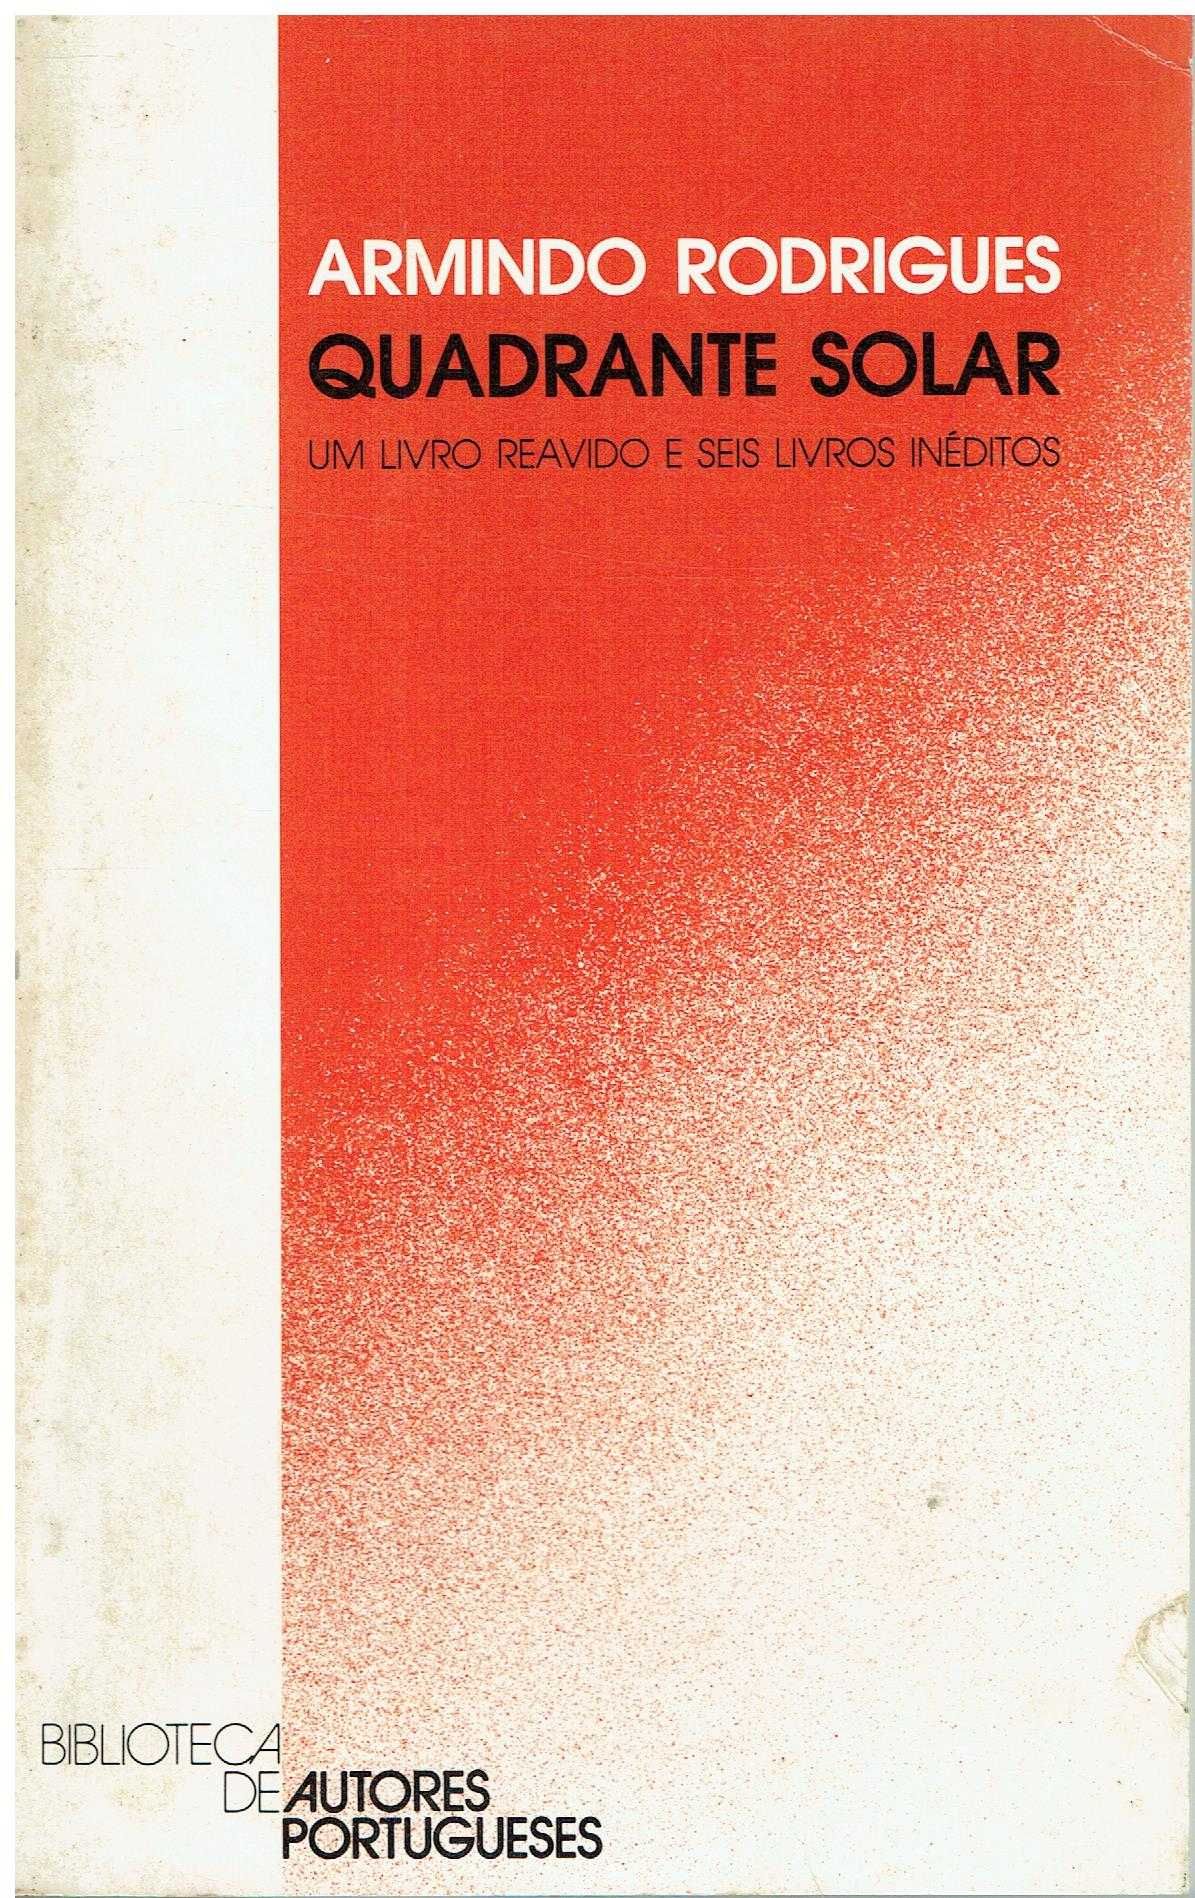 7821
	
Quadrante solar 
de Armindo Rodrigues.